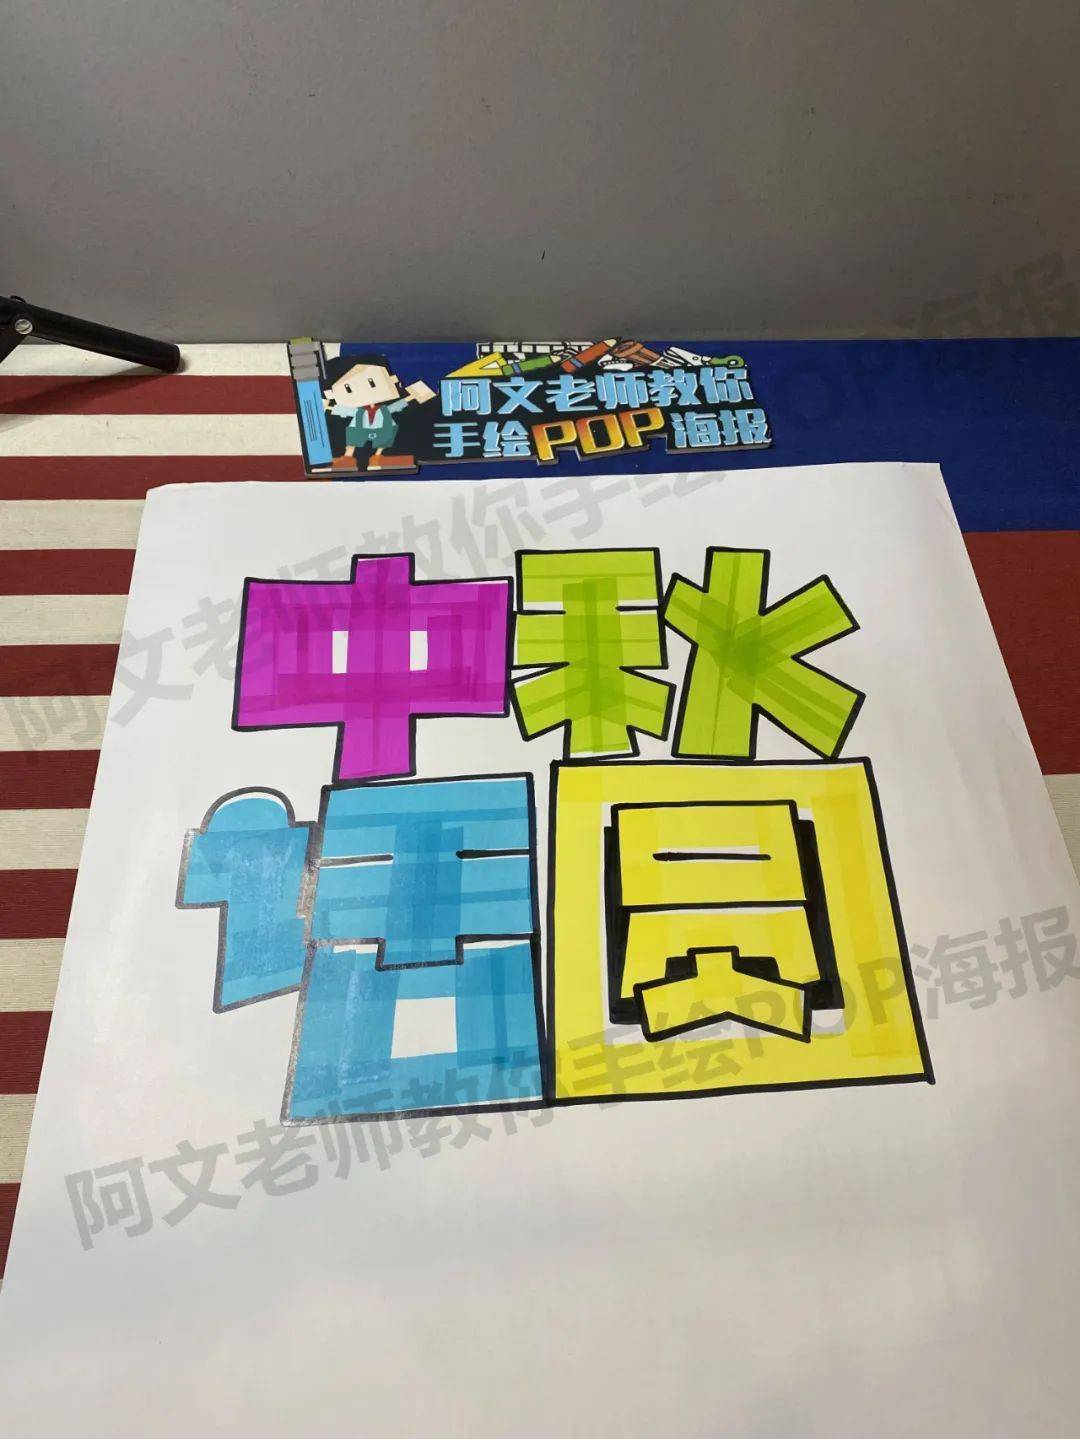 中国传统节日pop字体图片